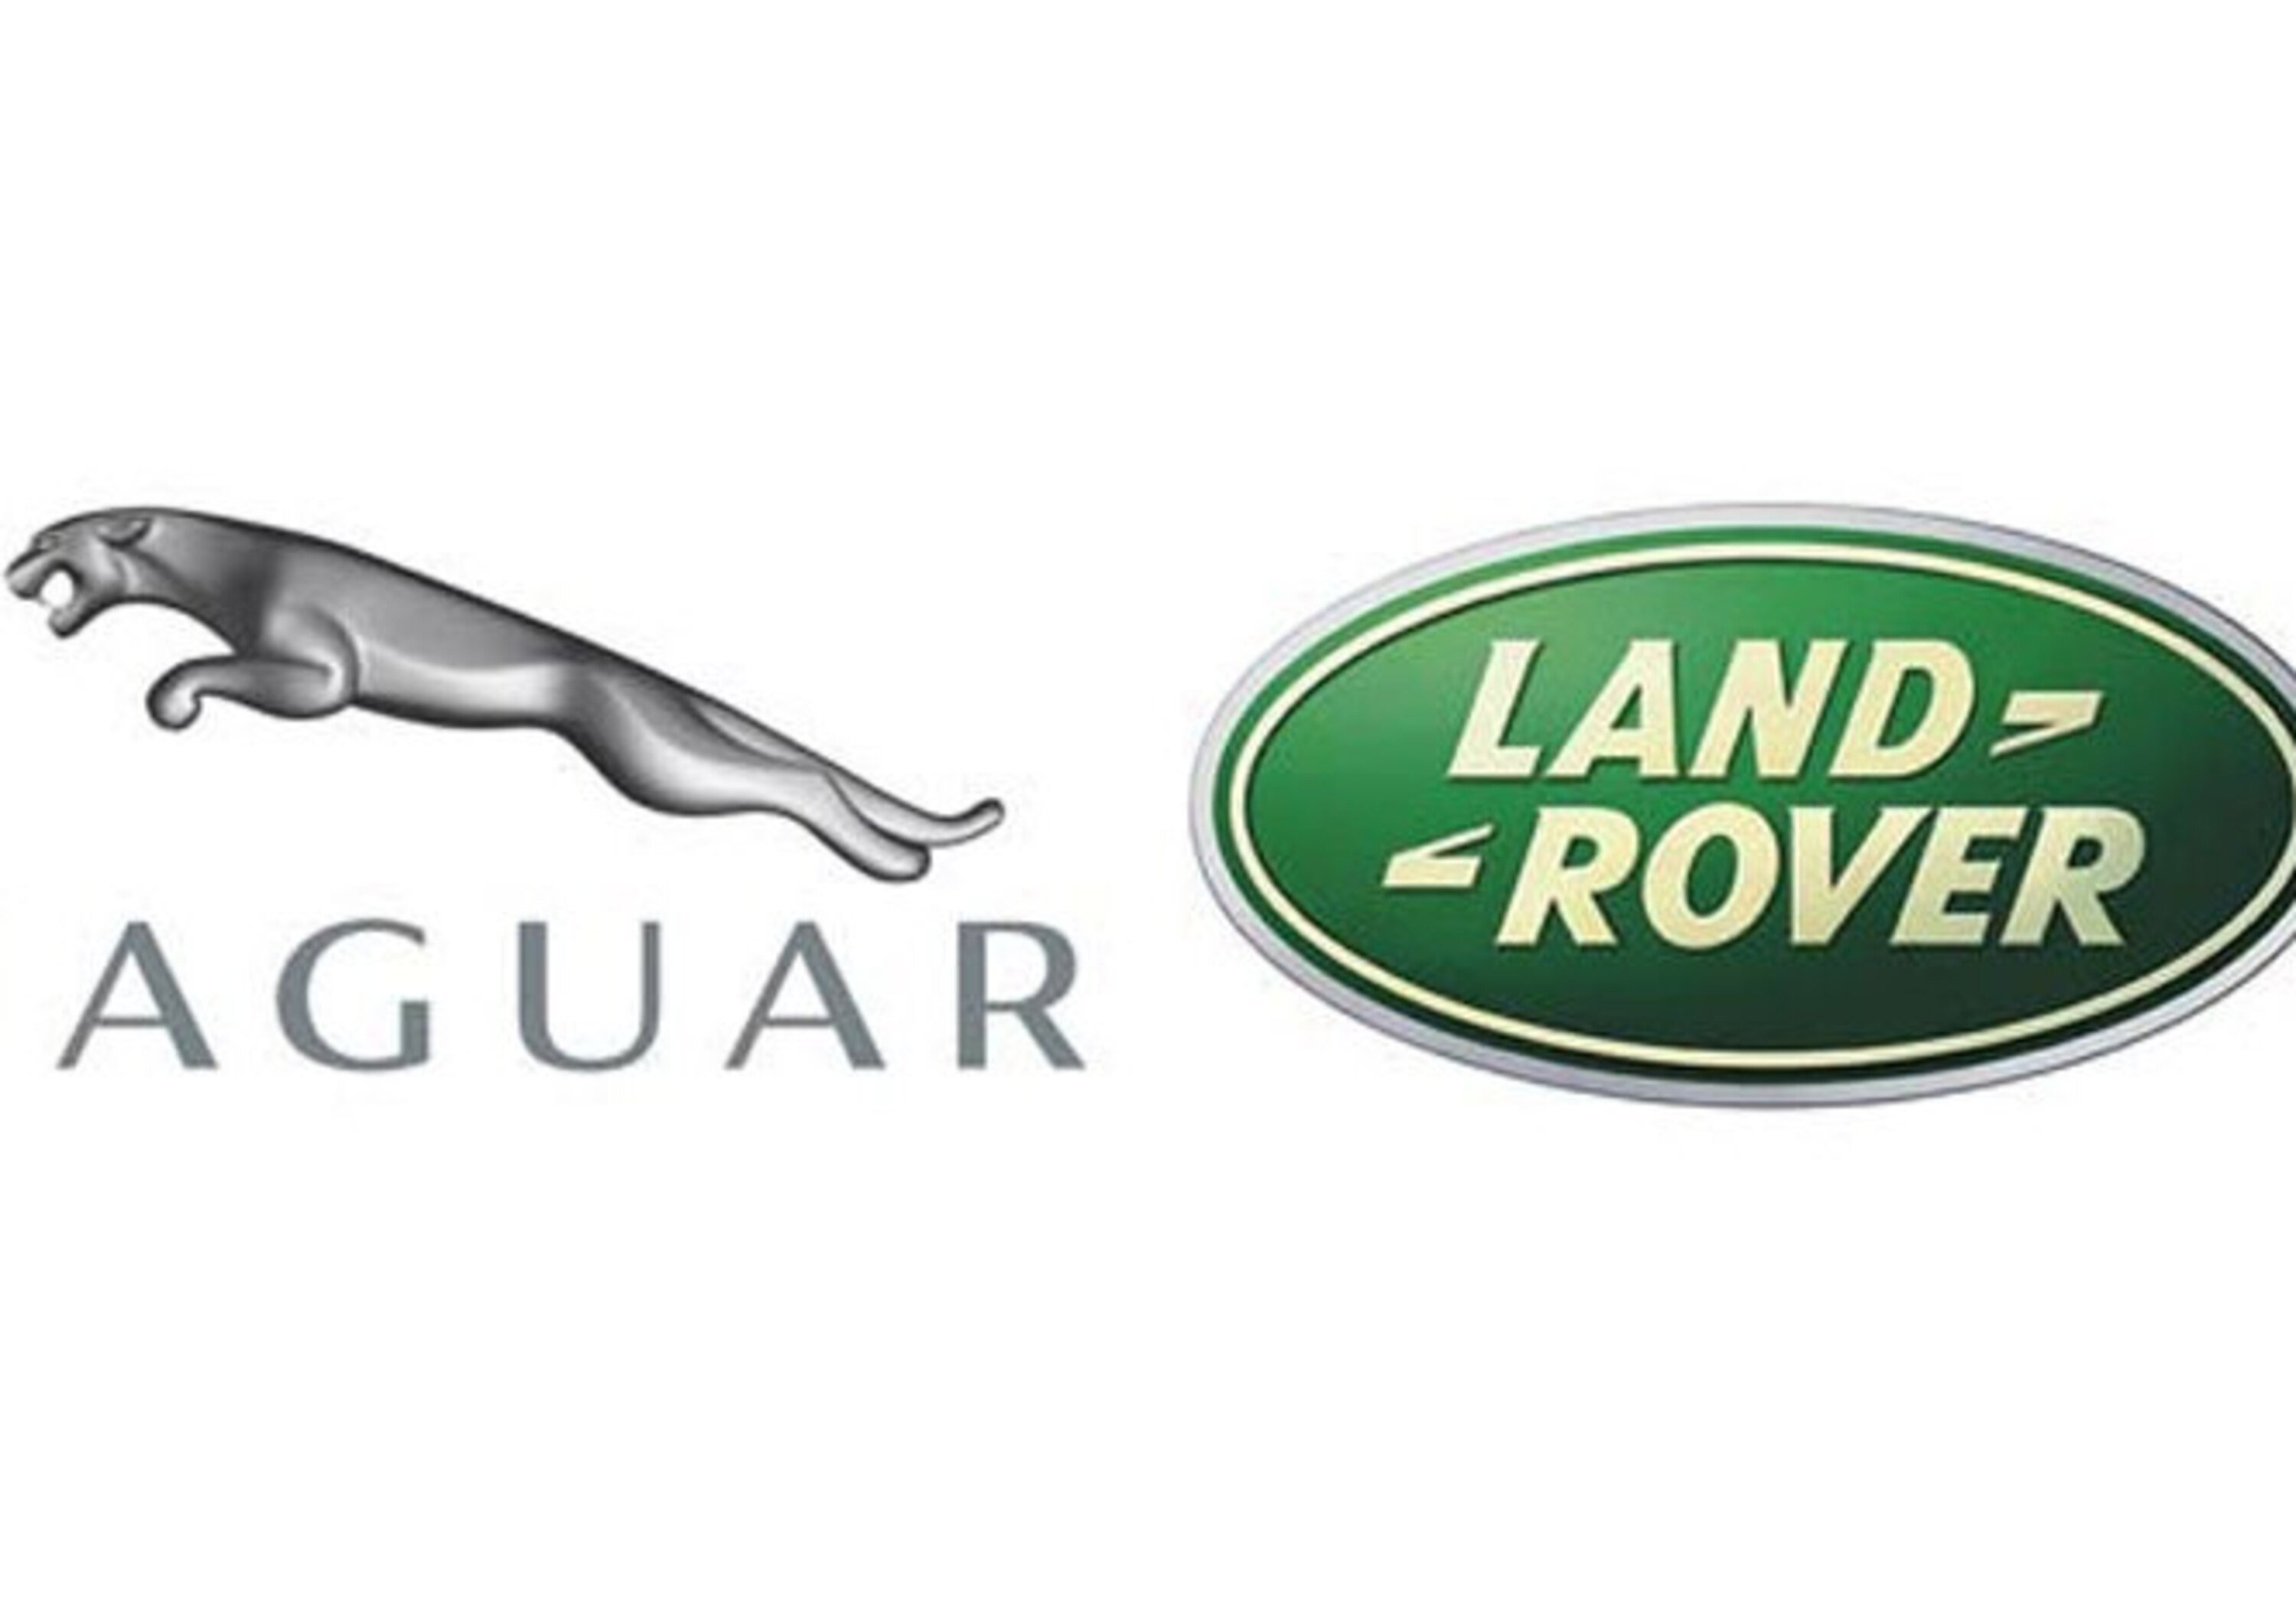 Jaguar &ndash; Land Rover: settembre record per il Gruppo